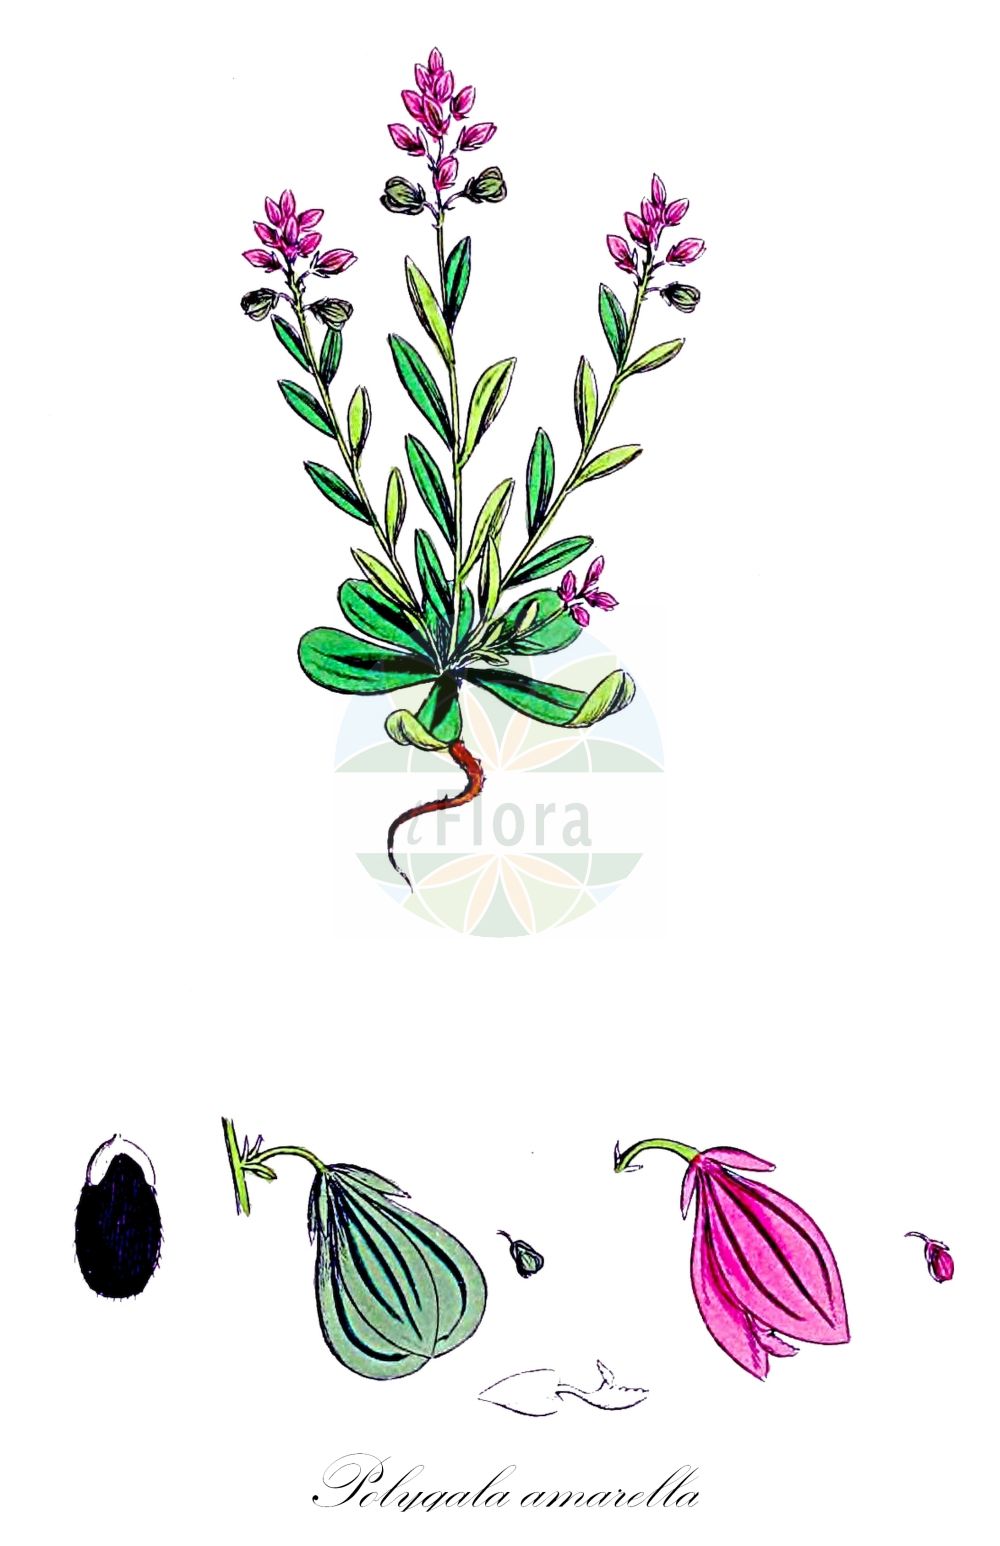 Historische Abbildung von Polygala amarella (Sumpf-Kreuzblümchen - Dwarf Milkwort). Das Bild zeigt Blatt, Bluete, Frucht und Same. ---- Historical Drawing of Polygala amarella (Sumpf-Kreuzblümchen - Dwarf Milkwort). The image is showing leaf, flower, fruit and seed.(Polygala amarella,Sumpf-Kreuzblümchen,Dwarf Milkwort,Polygala amarella,Polygala austriaca,Polygala decipiens,Sumpf-Kreuzbluemchen,Sumpf-Kreuzblume,Dwarf Milkwort,Bitter Milkwort,Polygala,Kreuzblume,Milkwort,Polygalaceae,Kreuzblümchengewächse,Polygala family,Blatt,Bluete,Frucht,Same,leaf,flower,fruit,seed,Sowerby (1790-1813))